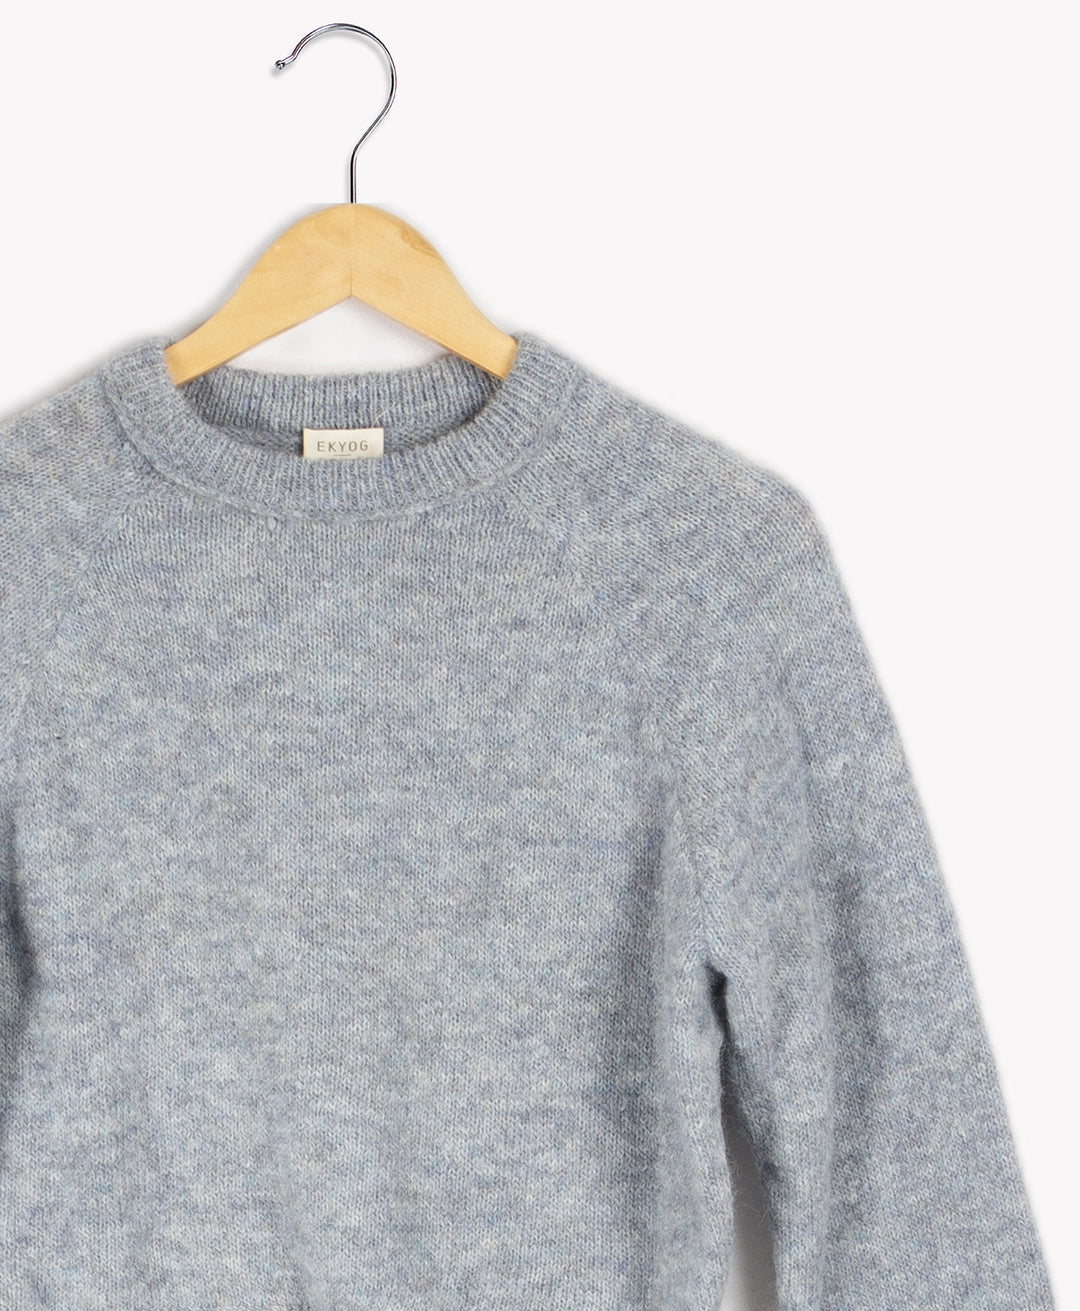 Sweater - Size XS